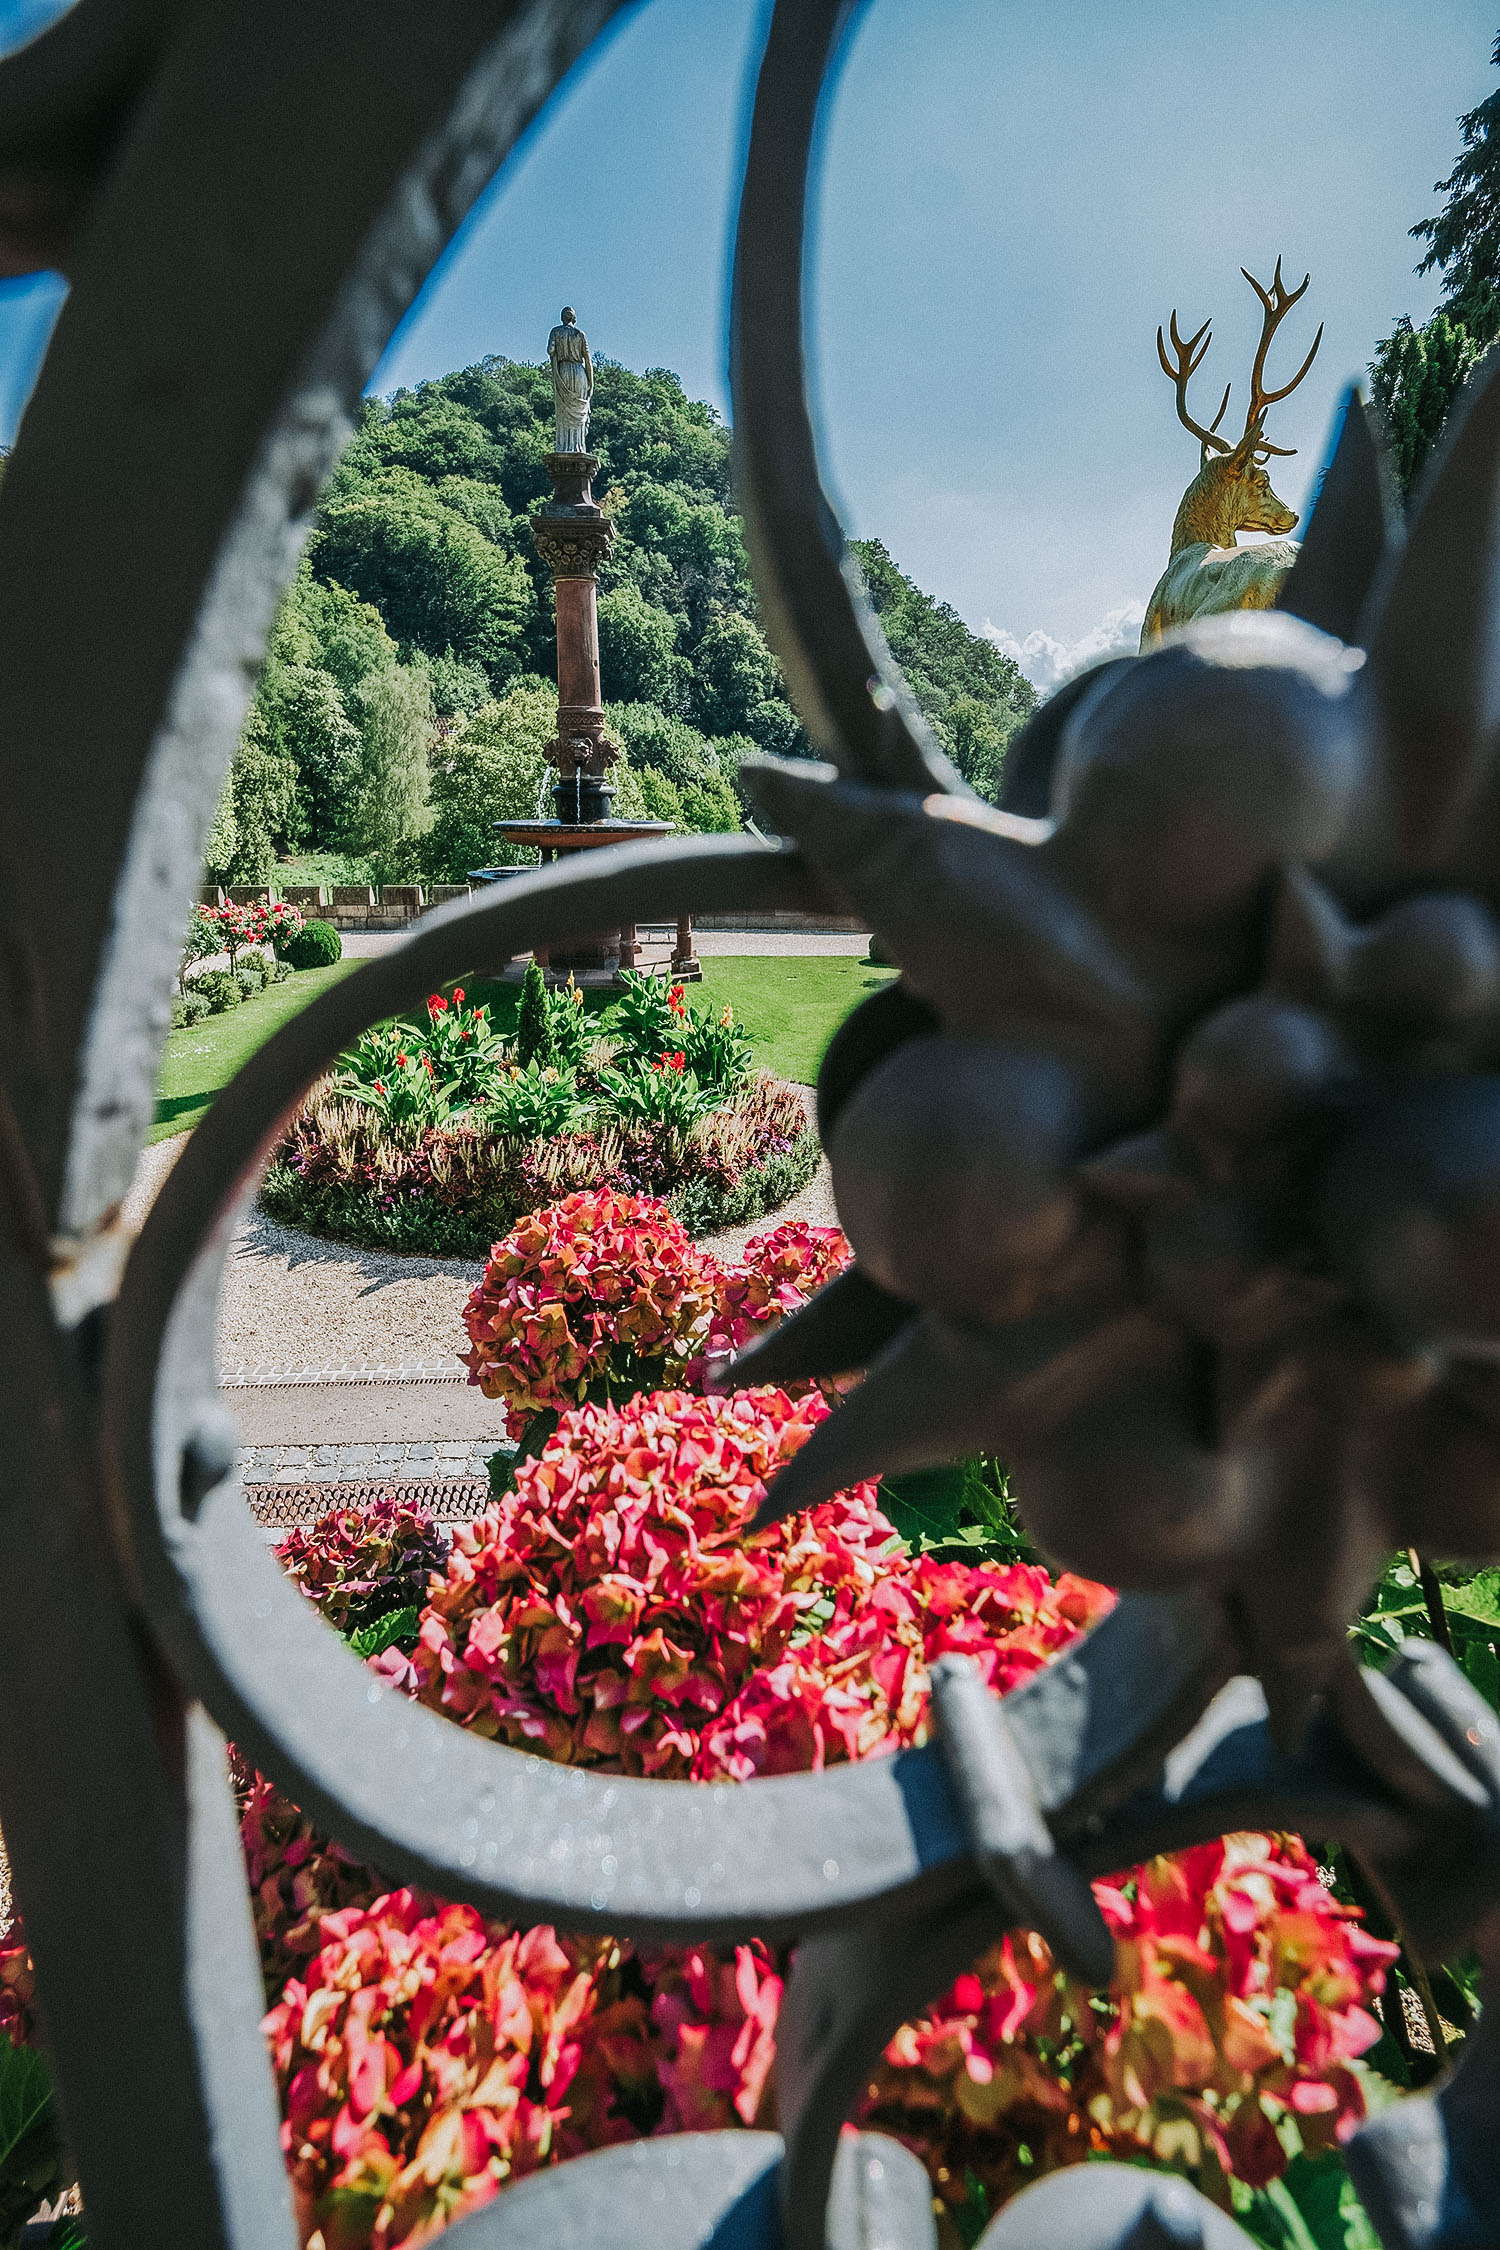 Ausblick von Schloss Drachenburg auf Schmuckbeet im Garten. Hortensienblüte im Vordergrund.